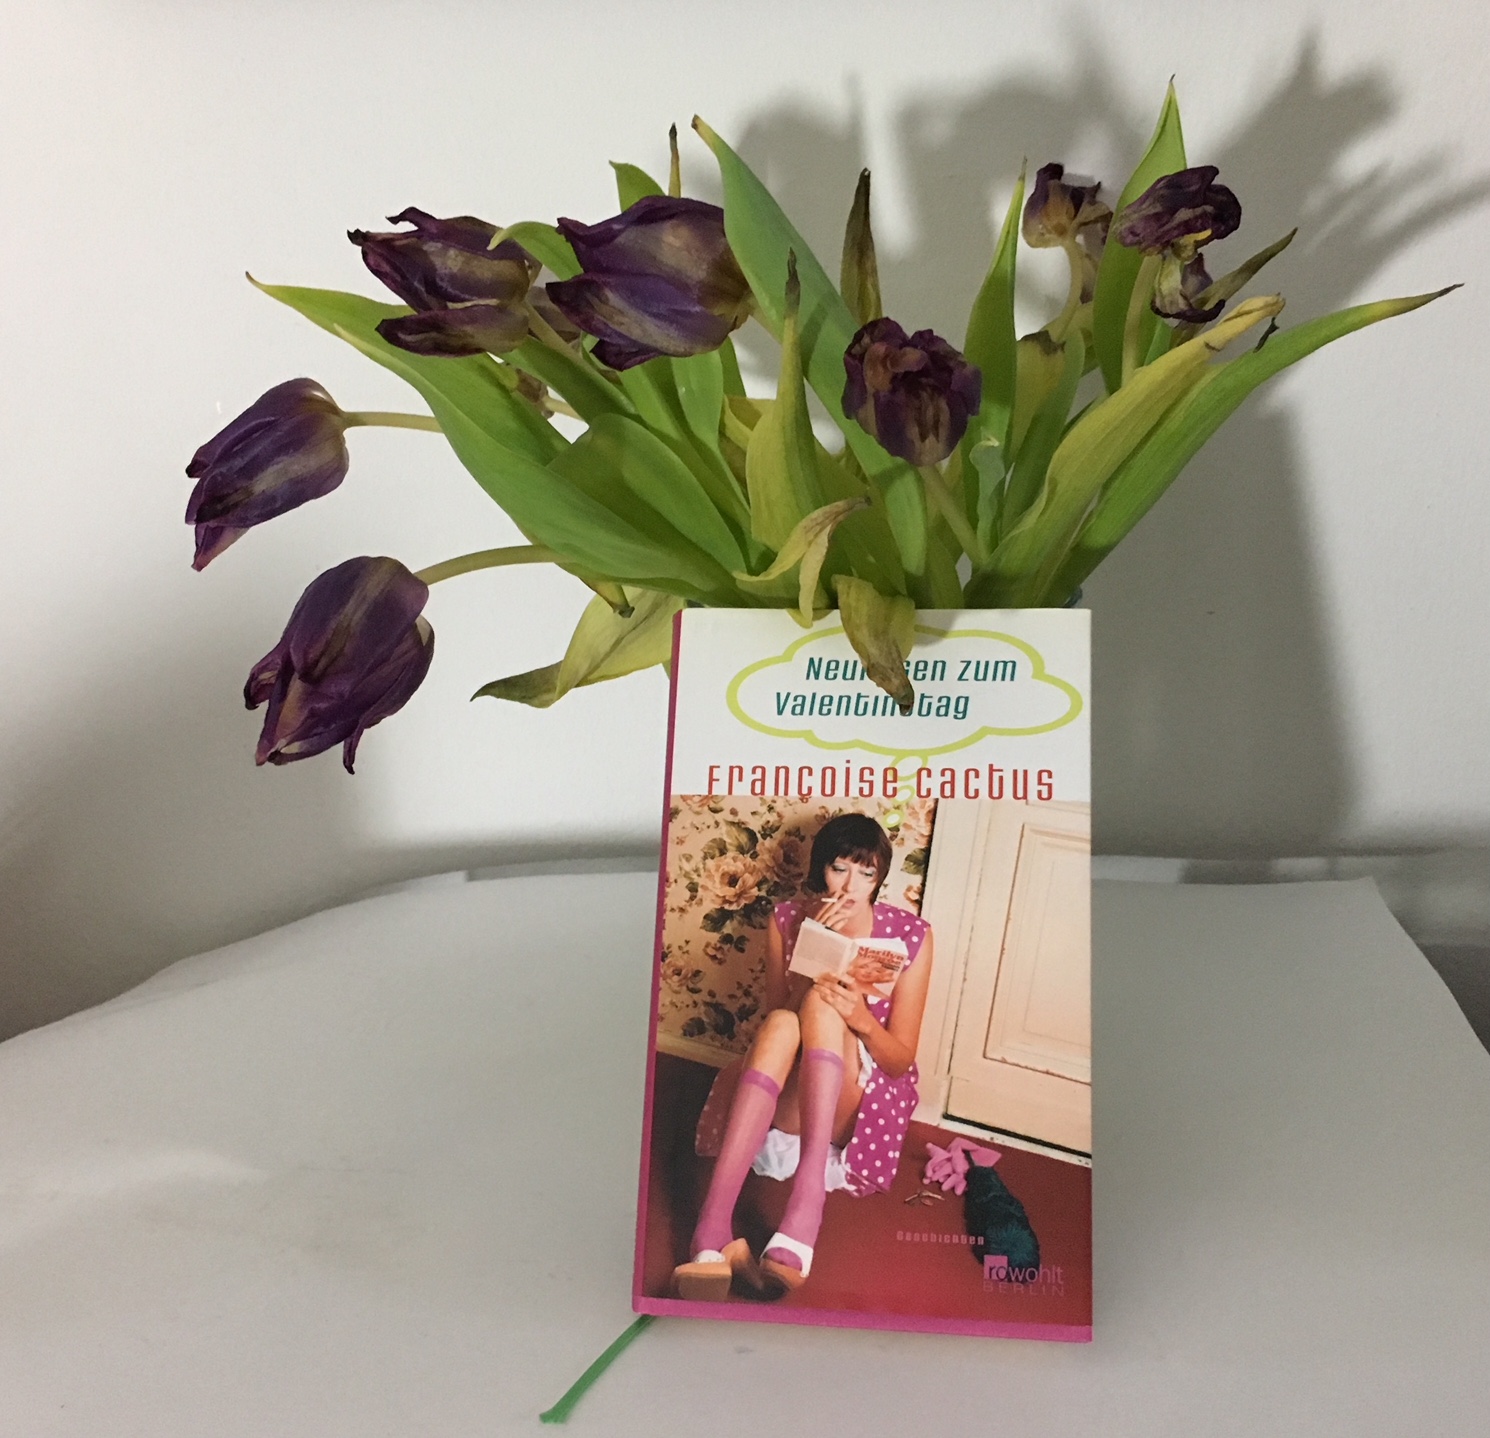 Francoise Cactuse Buch Neurosen zum Valentinstag vor einem verwelkten Strauß Tulpen.